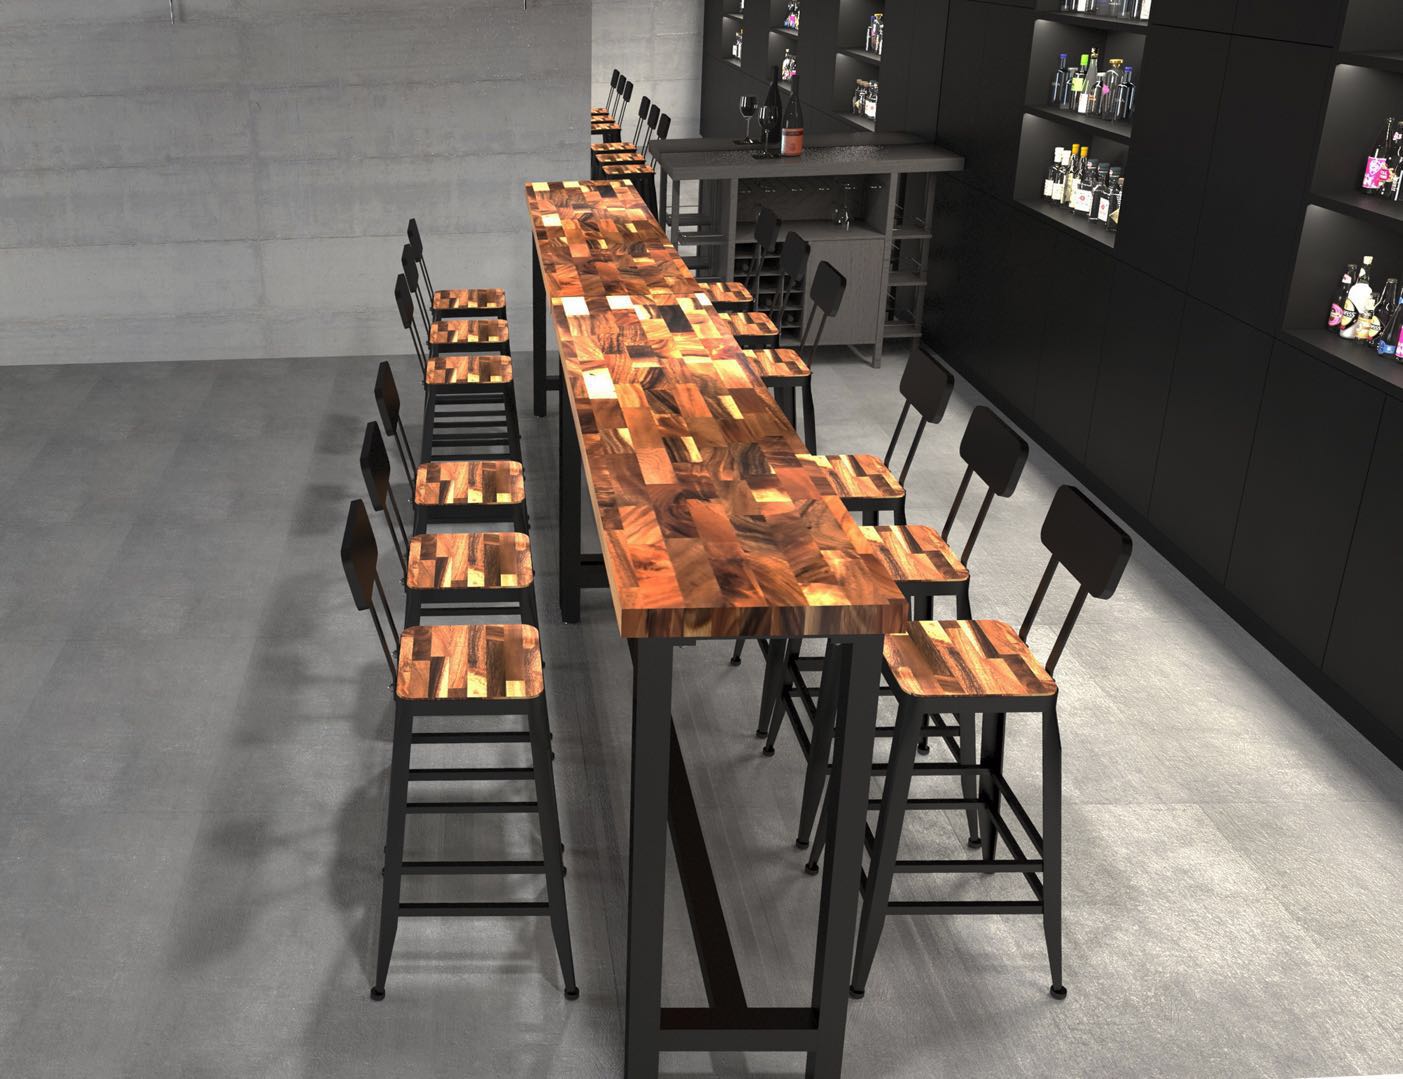 胡桃木实木北欧风系列酒吧桌会议桌餐桌的图片